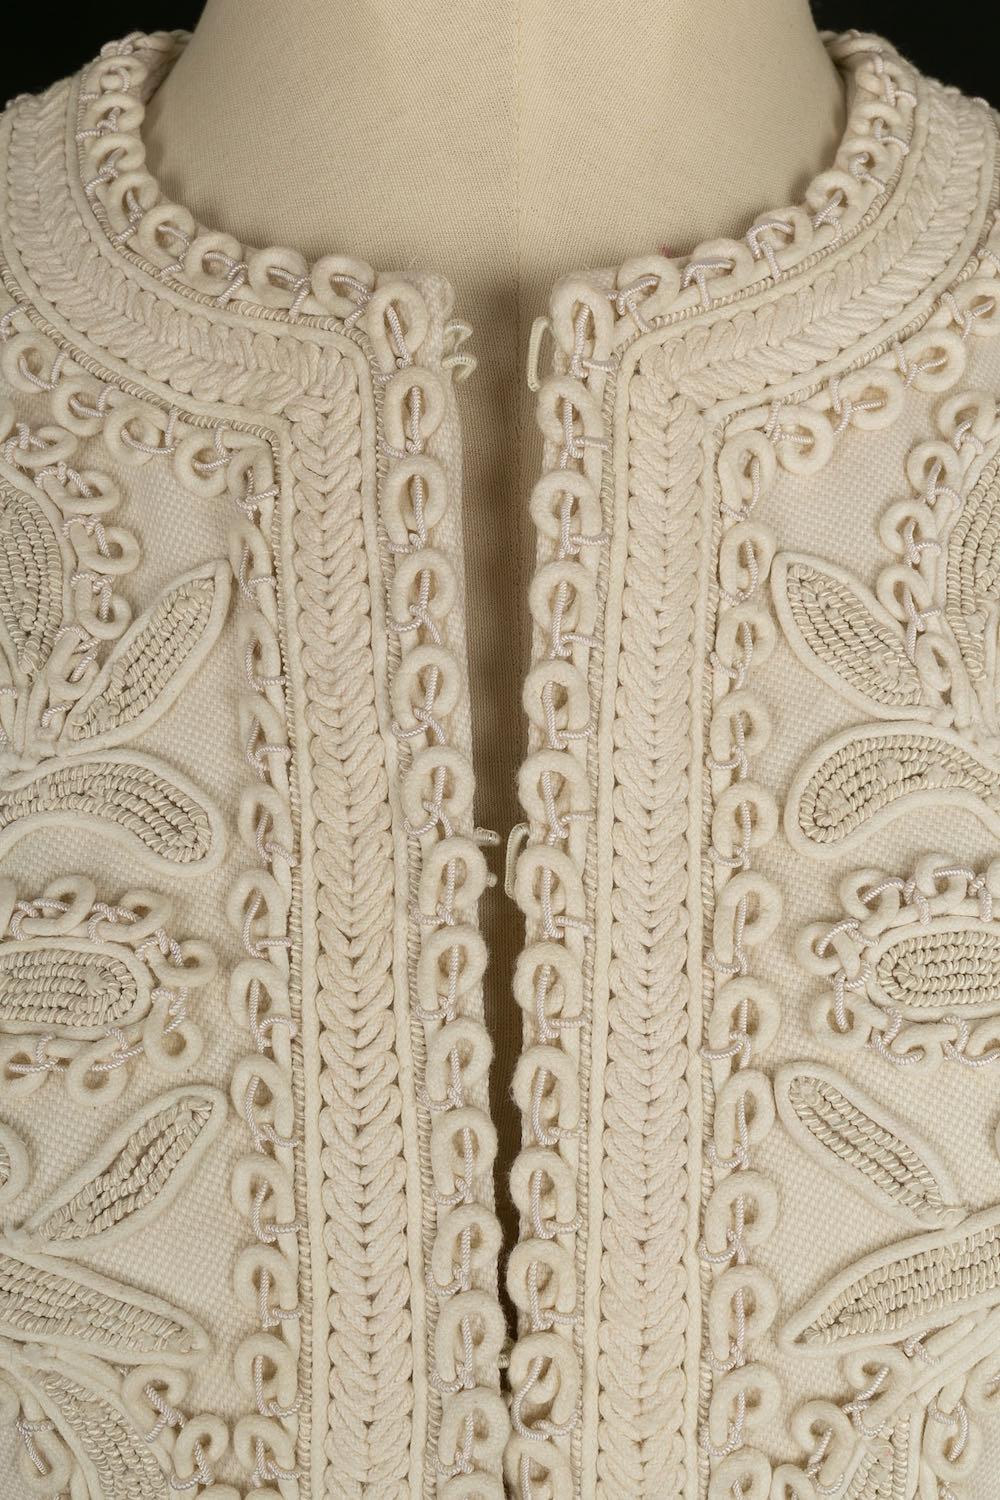 Valentino Embroidered Coat in White Ecru For Sale 1